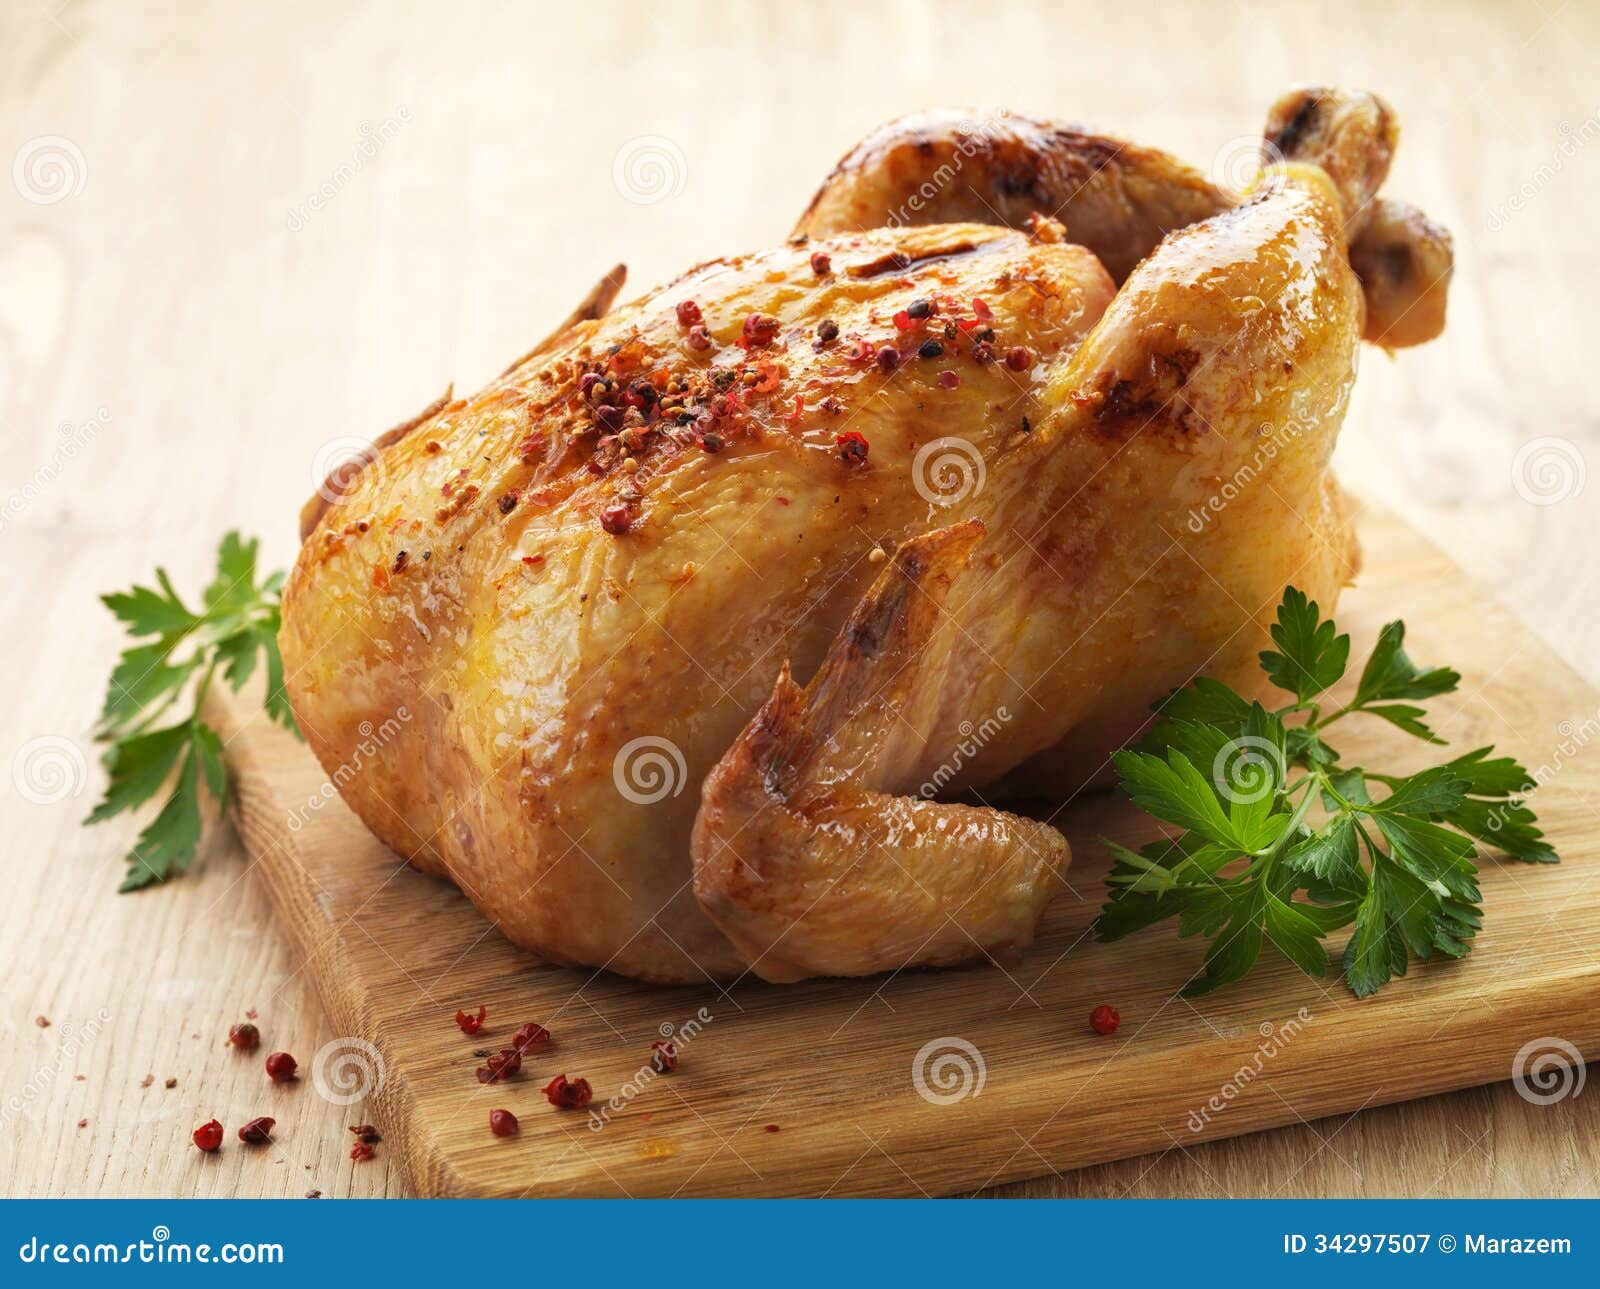 roast chicken